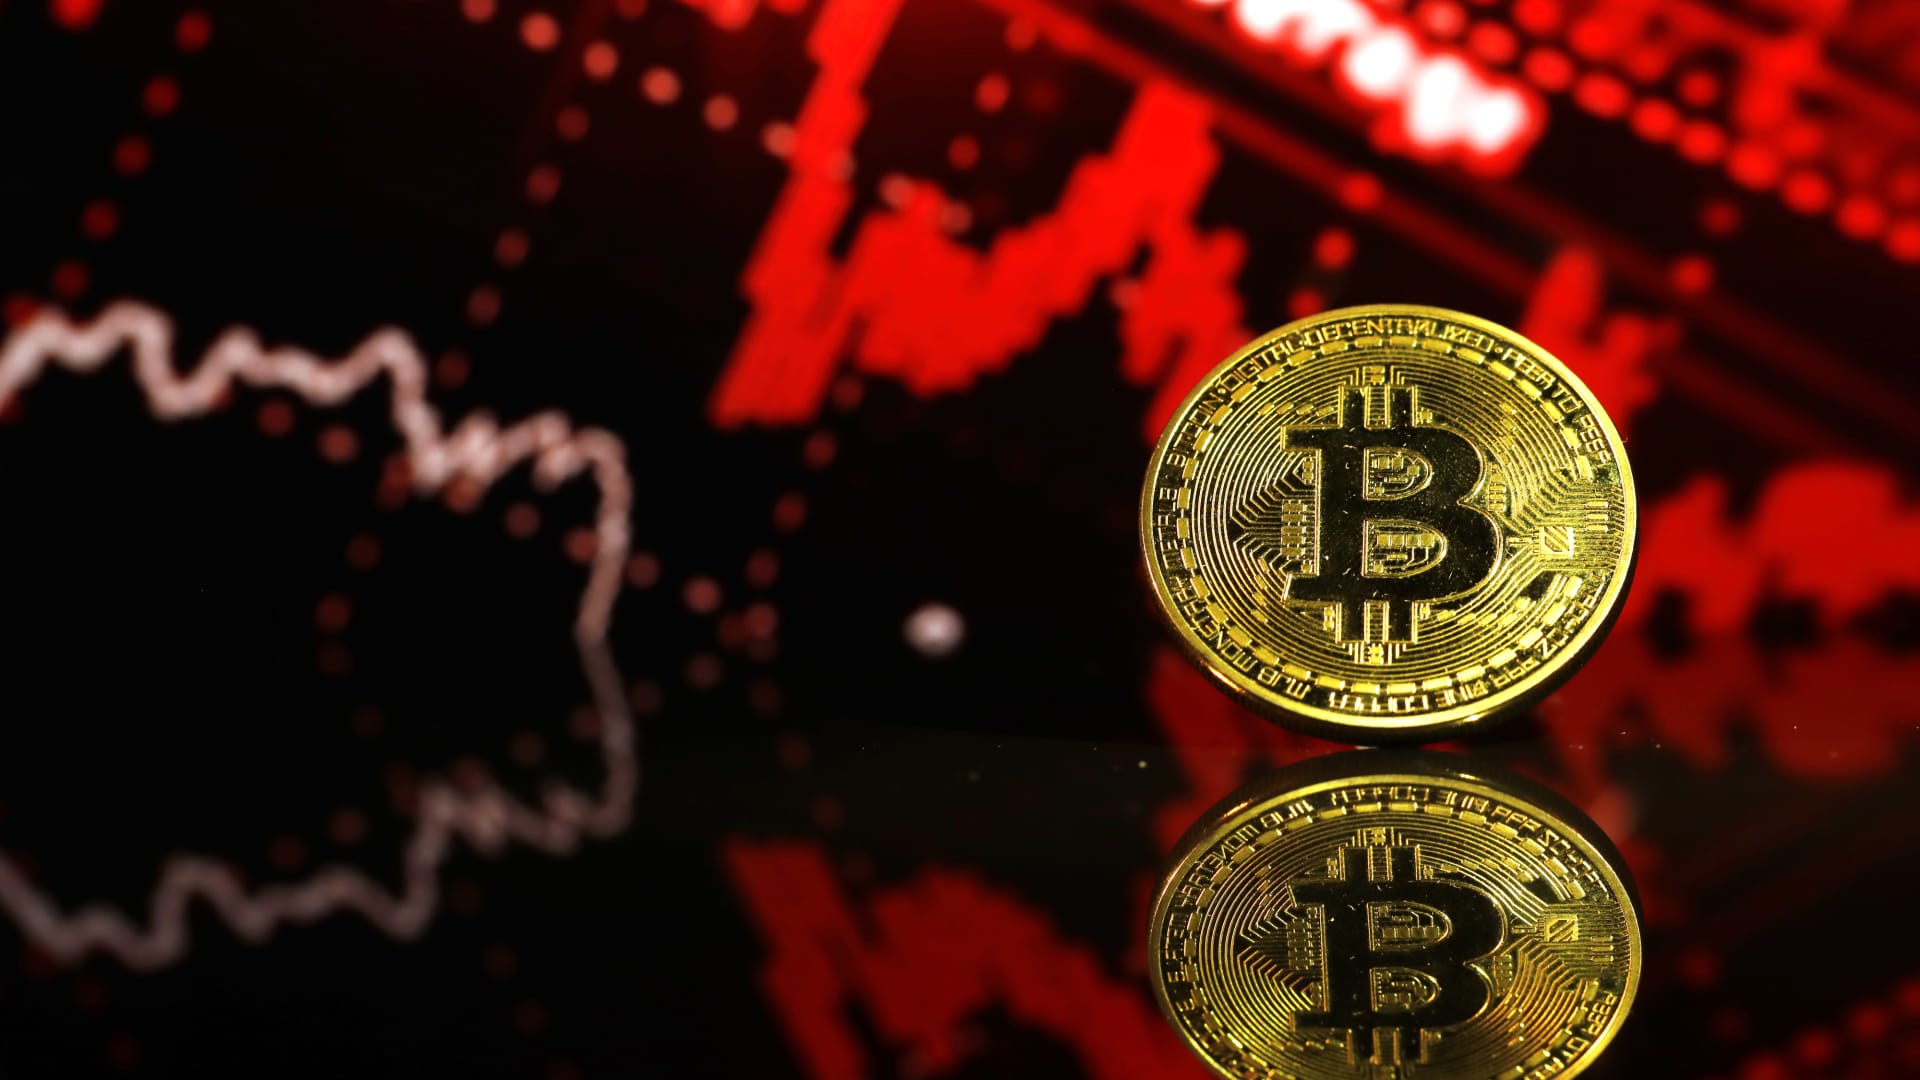 Bitcoin (BTC) falls sharply as $ 126 billion wiped off crypto market